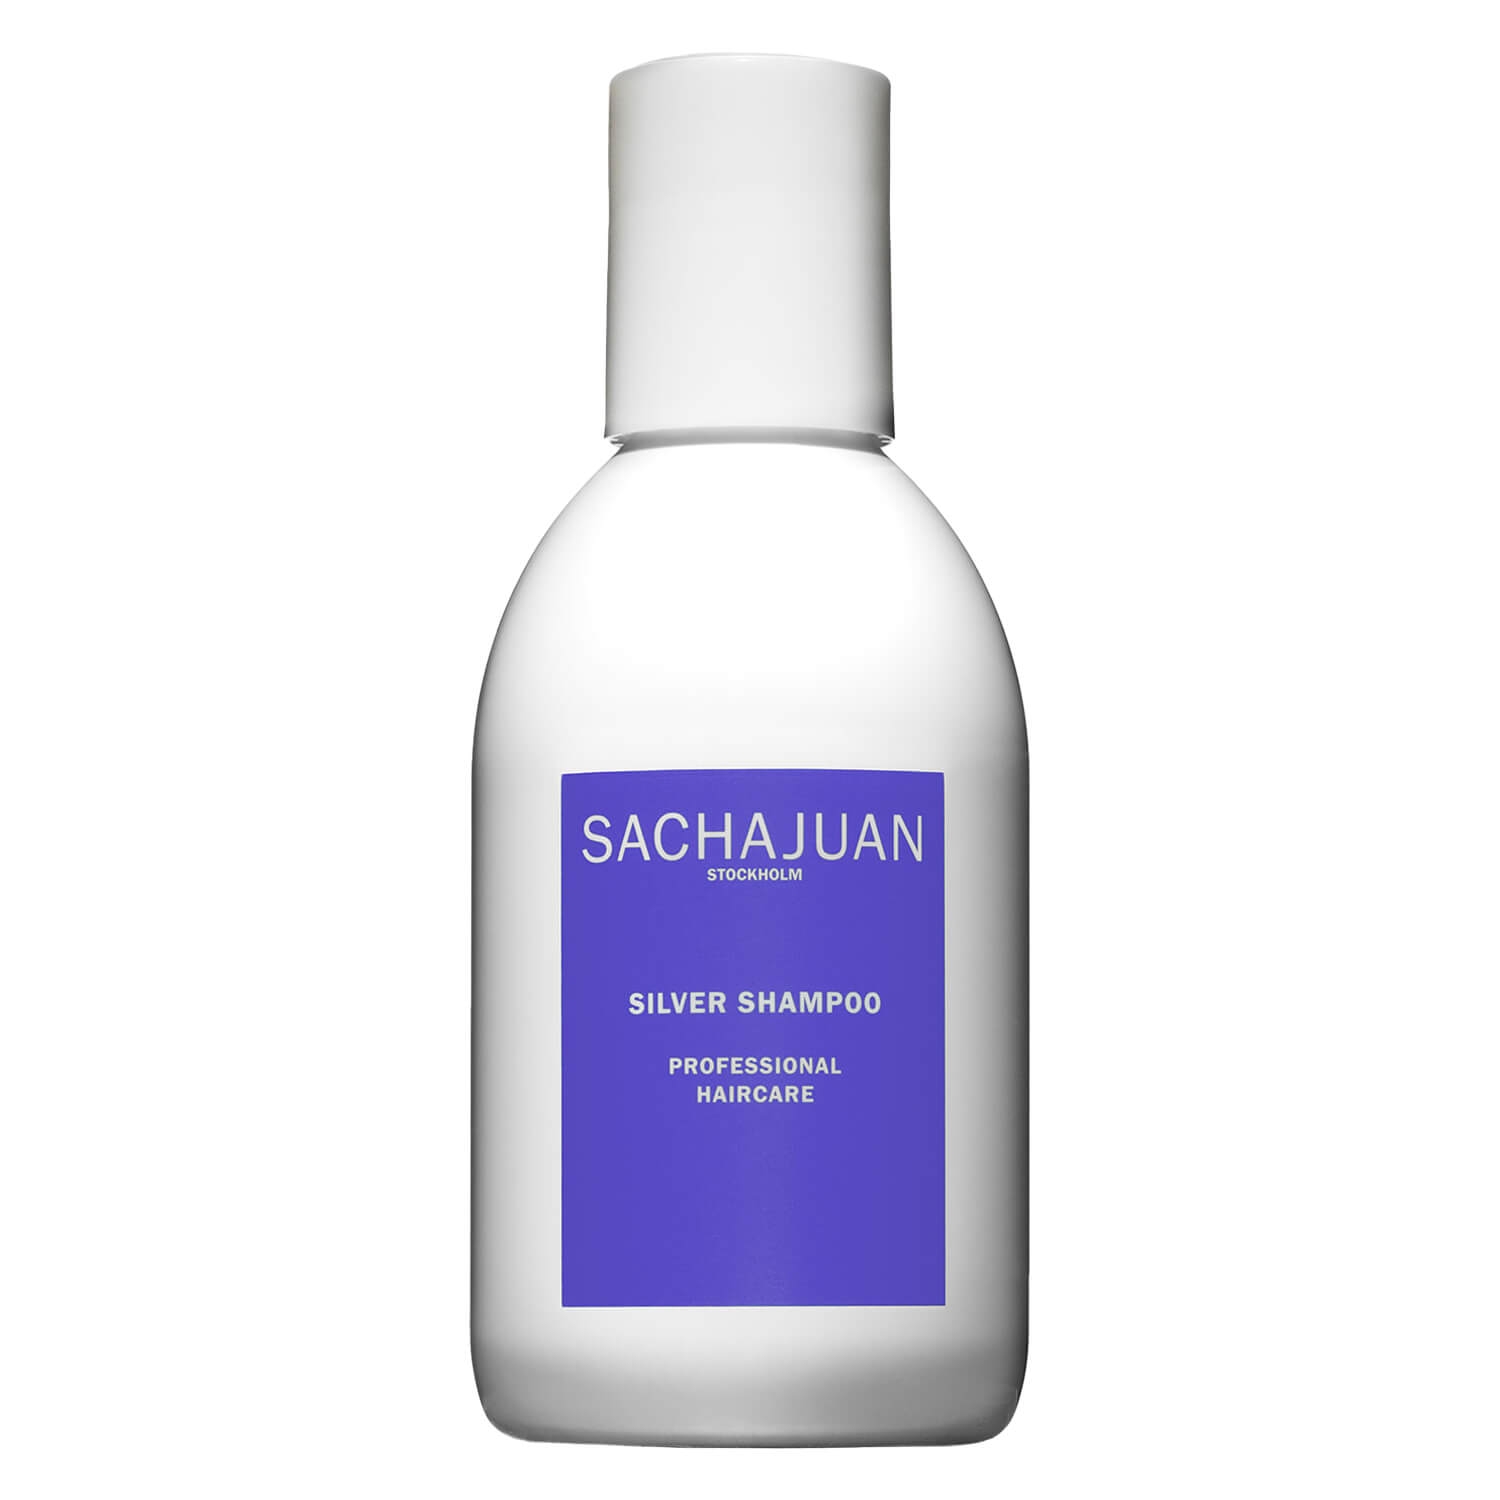 Produktbild von SACHAJUAN - Silver Shampoo